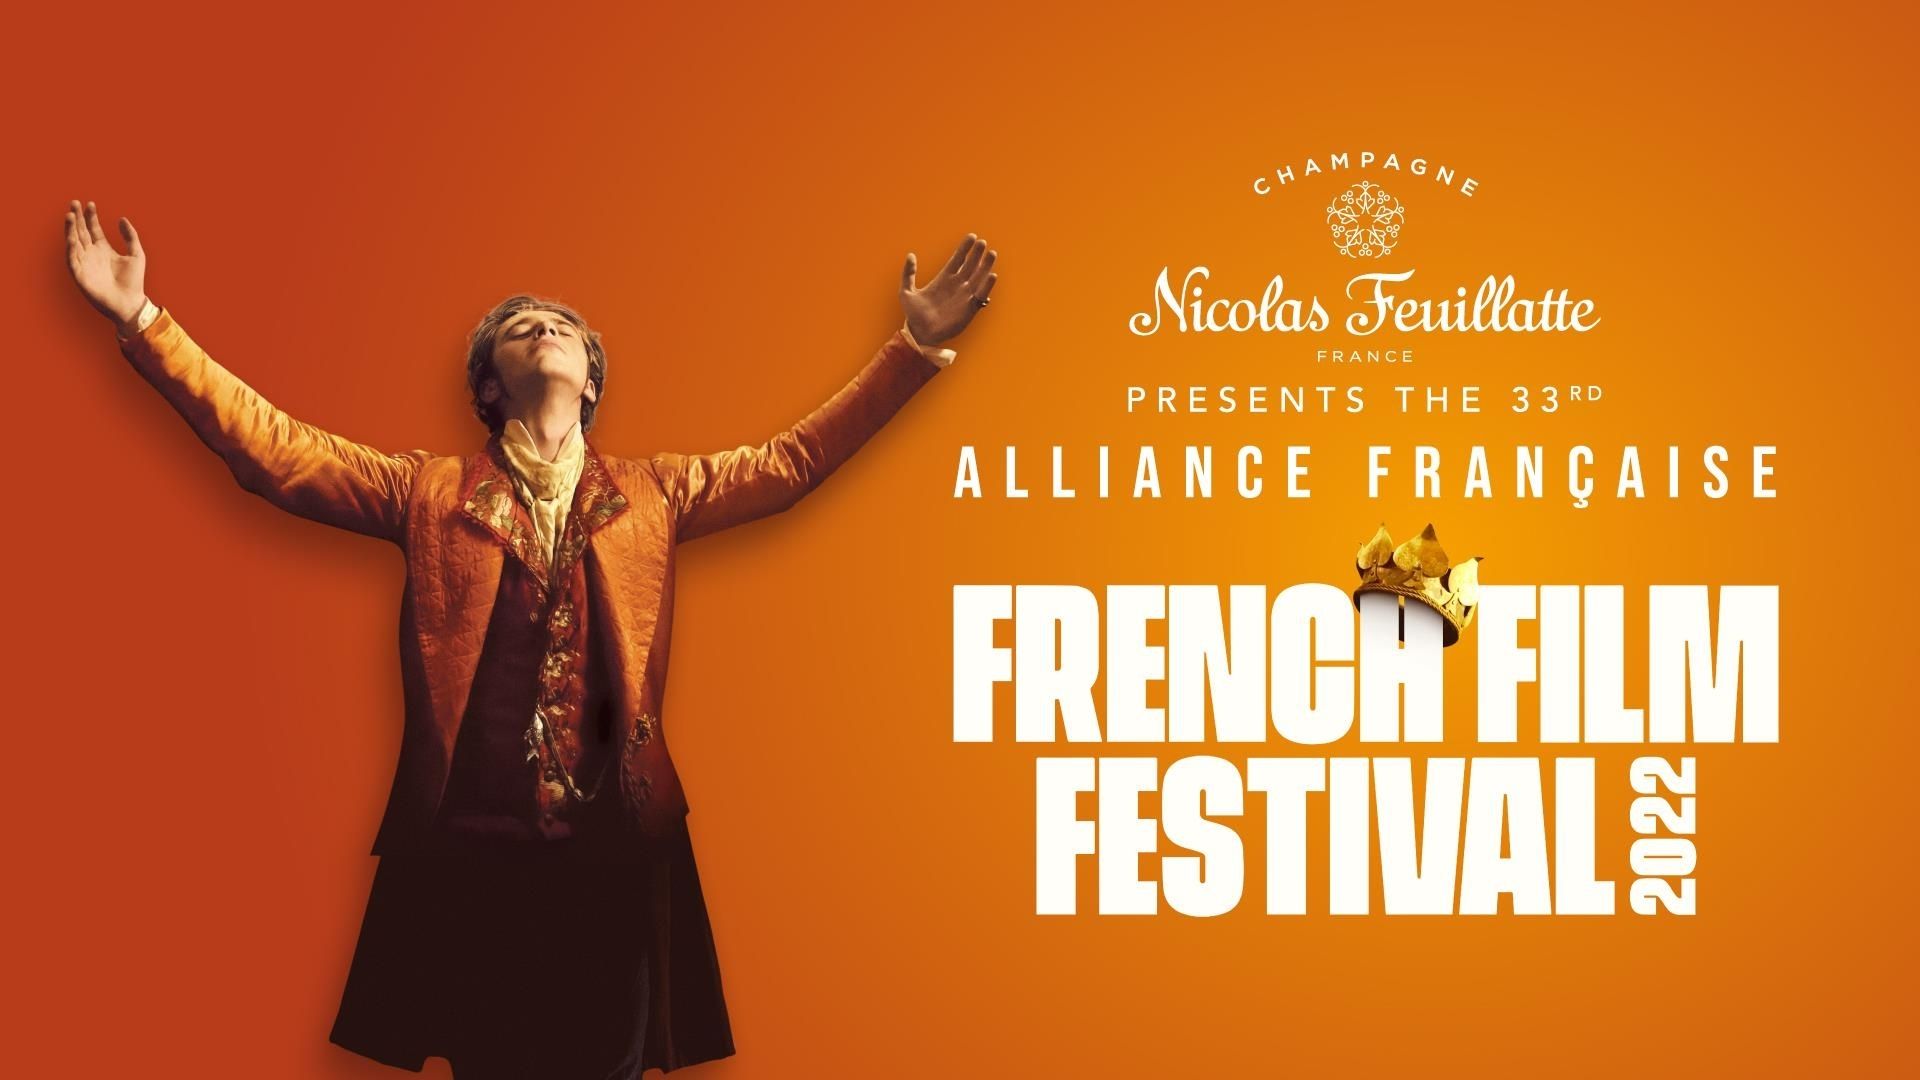 33è édition du “French film festival“ de l’Alliance Française d’Australie